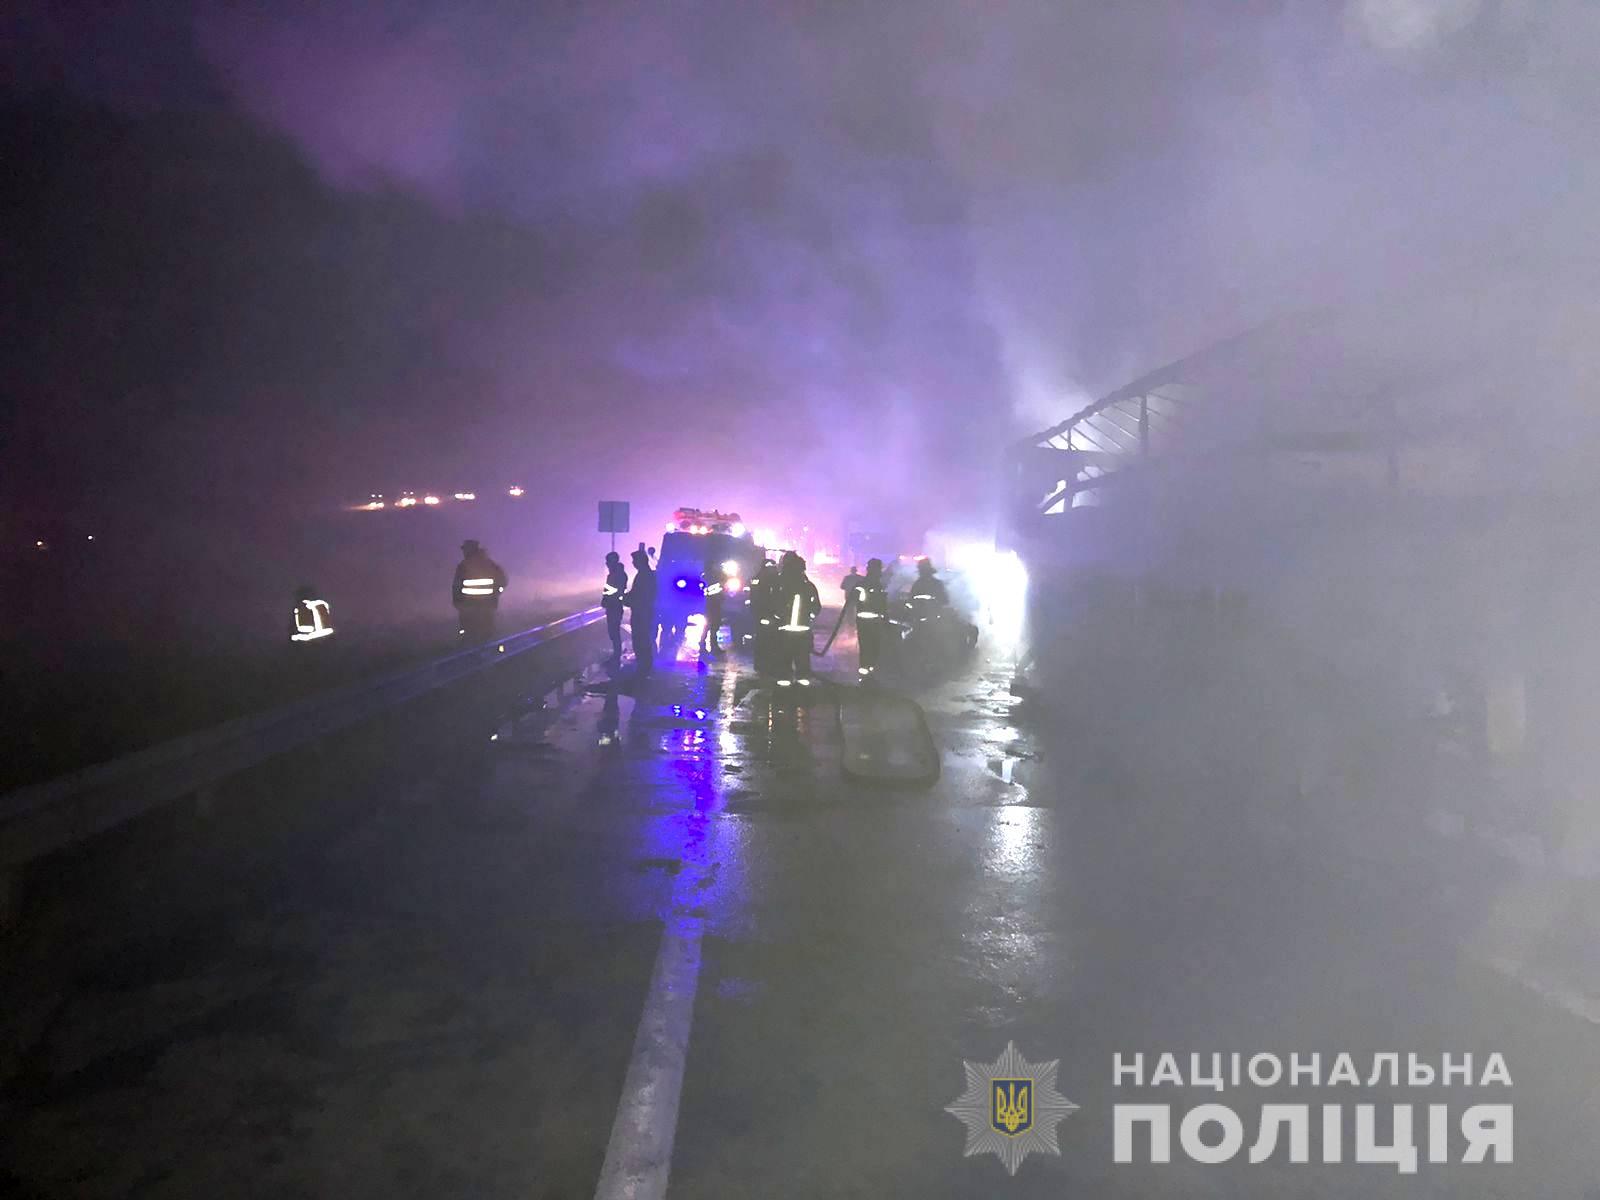 В Одеській області поблизу Любашівки о п’ятій годині ранку зіткнулися відразу п’ять транспортних засобів: дві вантажівки і три легковика, фото - Нацполіція